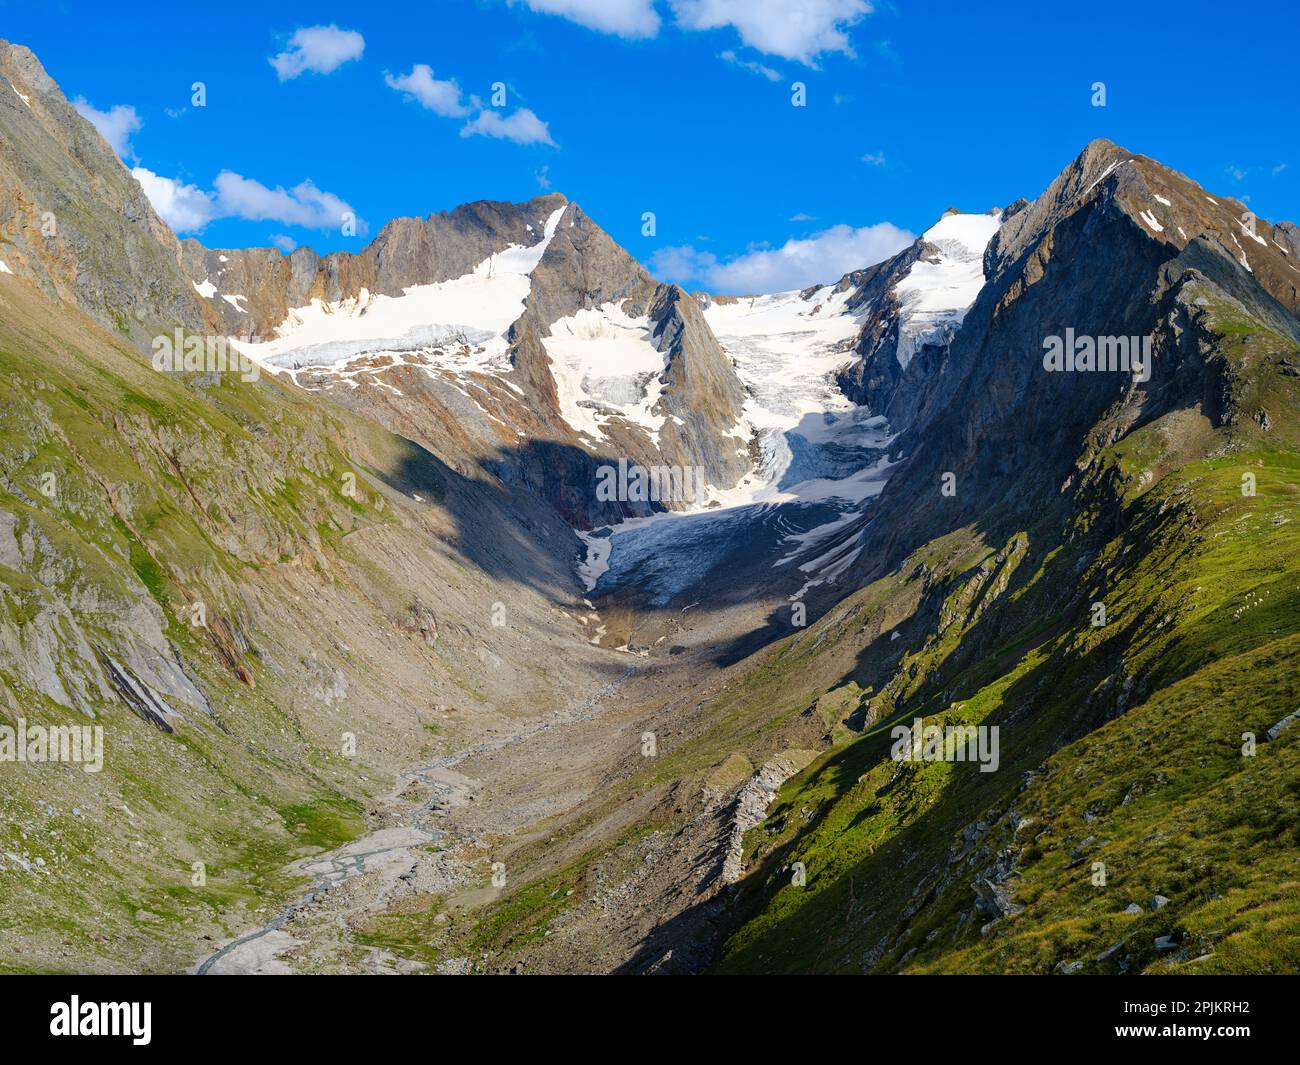 Vallée de Gaisbergtal, Mt. Hochfirst et Mt. Lieberkogel vu de Mt. Hohe Mut. Alpes de l'Otztal dans le parc naturel de l'Otztal. Europe, Autriche, Tyrol Banque D'Images